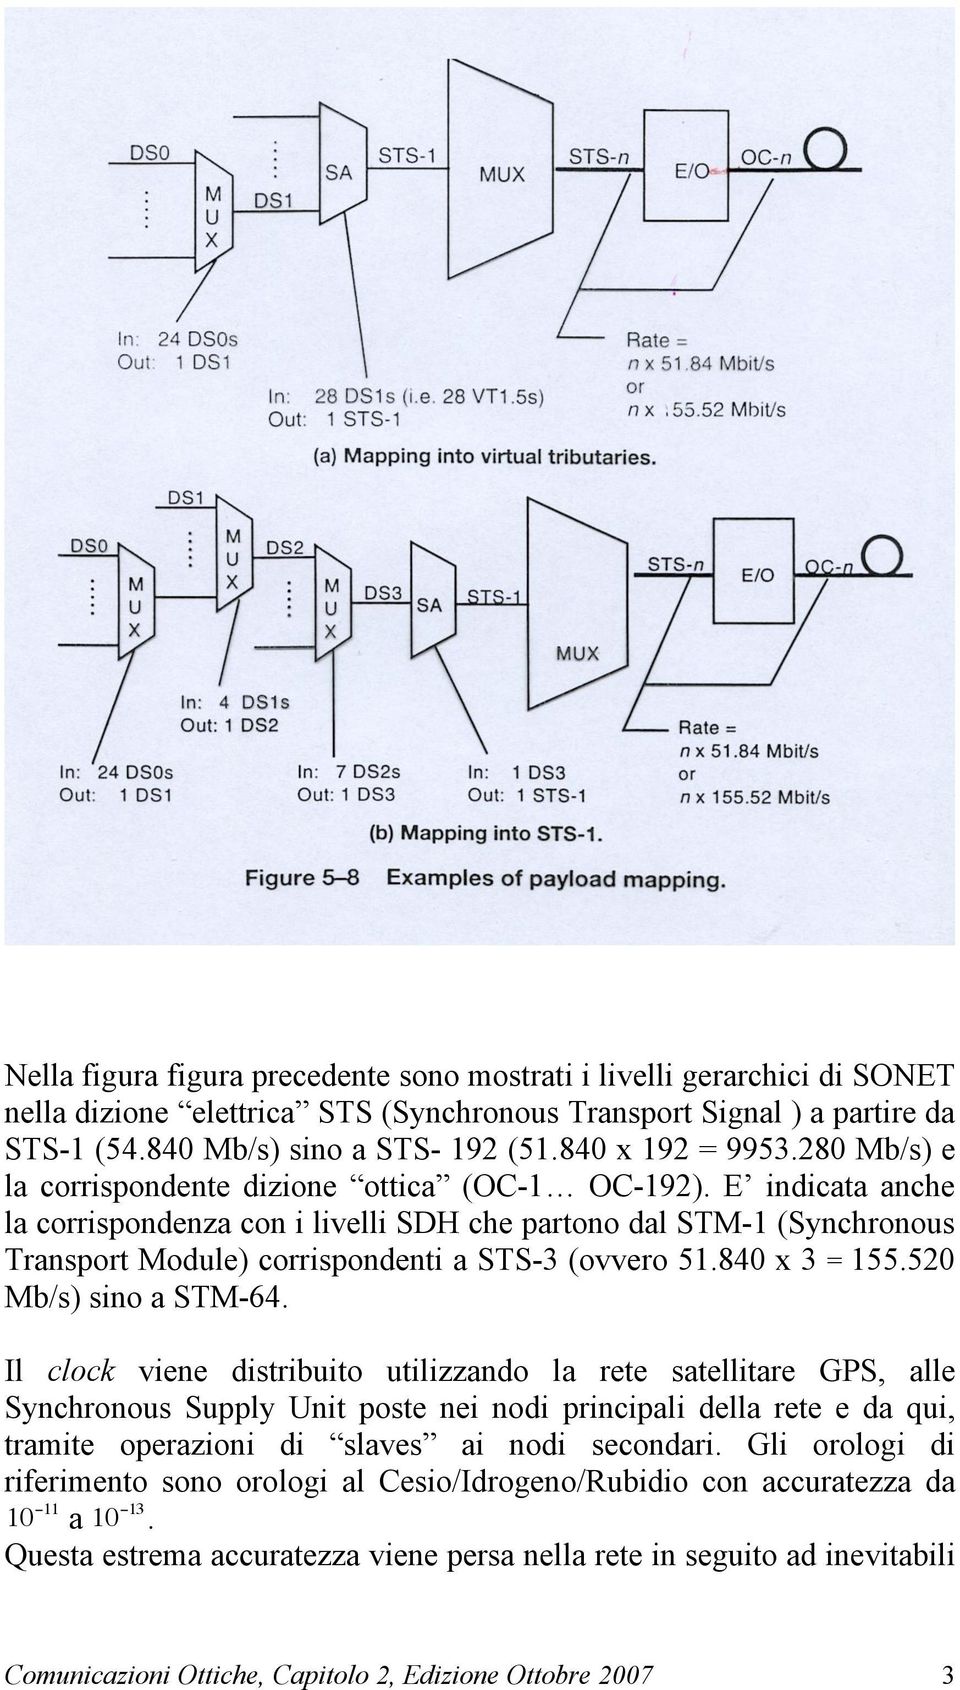 E indicata anche la corrispondenza con i livelli SDH che partono dal STM-1 (Synchronous Transport Module) corrispondenti a STS-3 (ovvero 51.840 x 3 = 155.520 Mb/s) sino a STM-64.